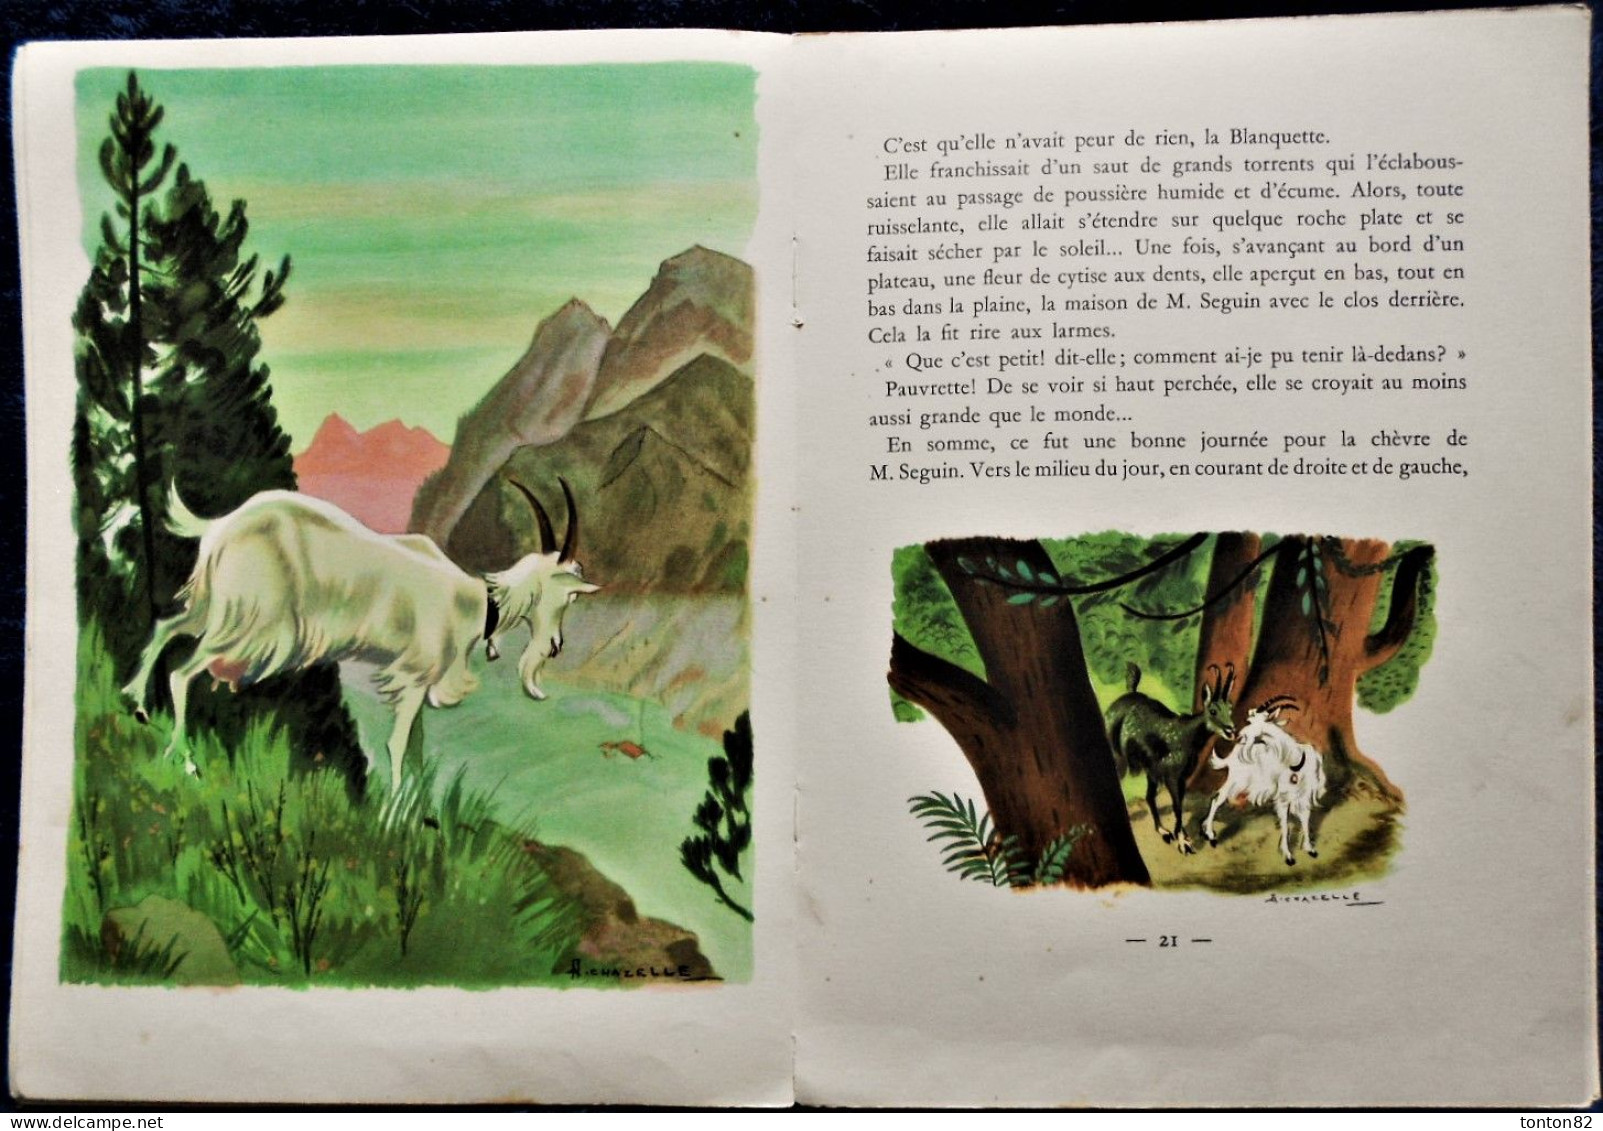 A. Daudet - La Chèvre de Monsieur Seguin - HACHETTE - Illustré par A. Chazelle - ( 1958 ) - Sans jaquette